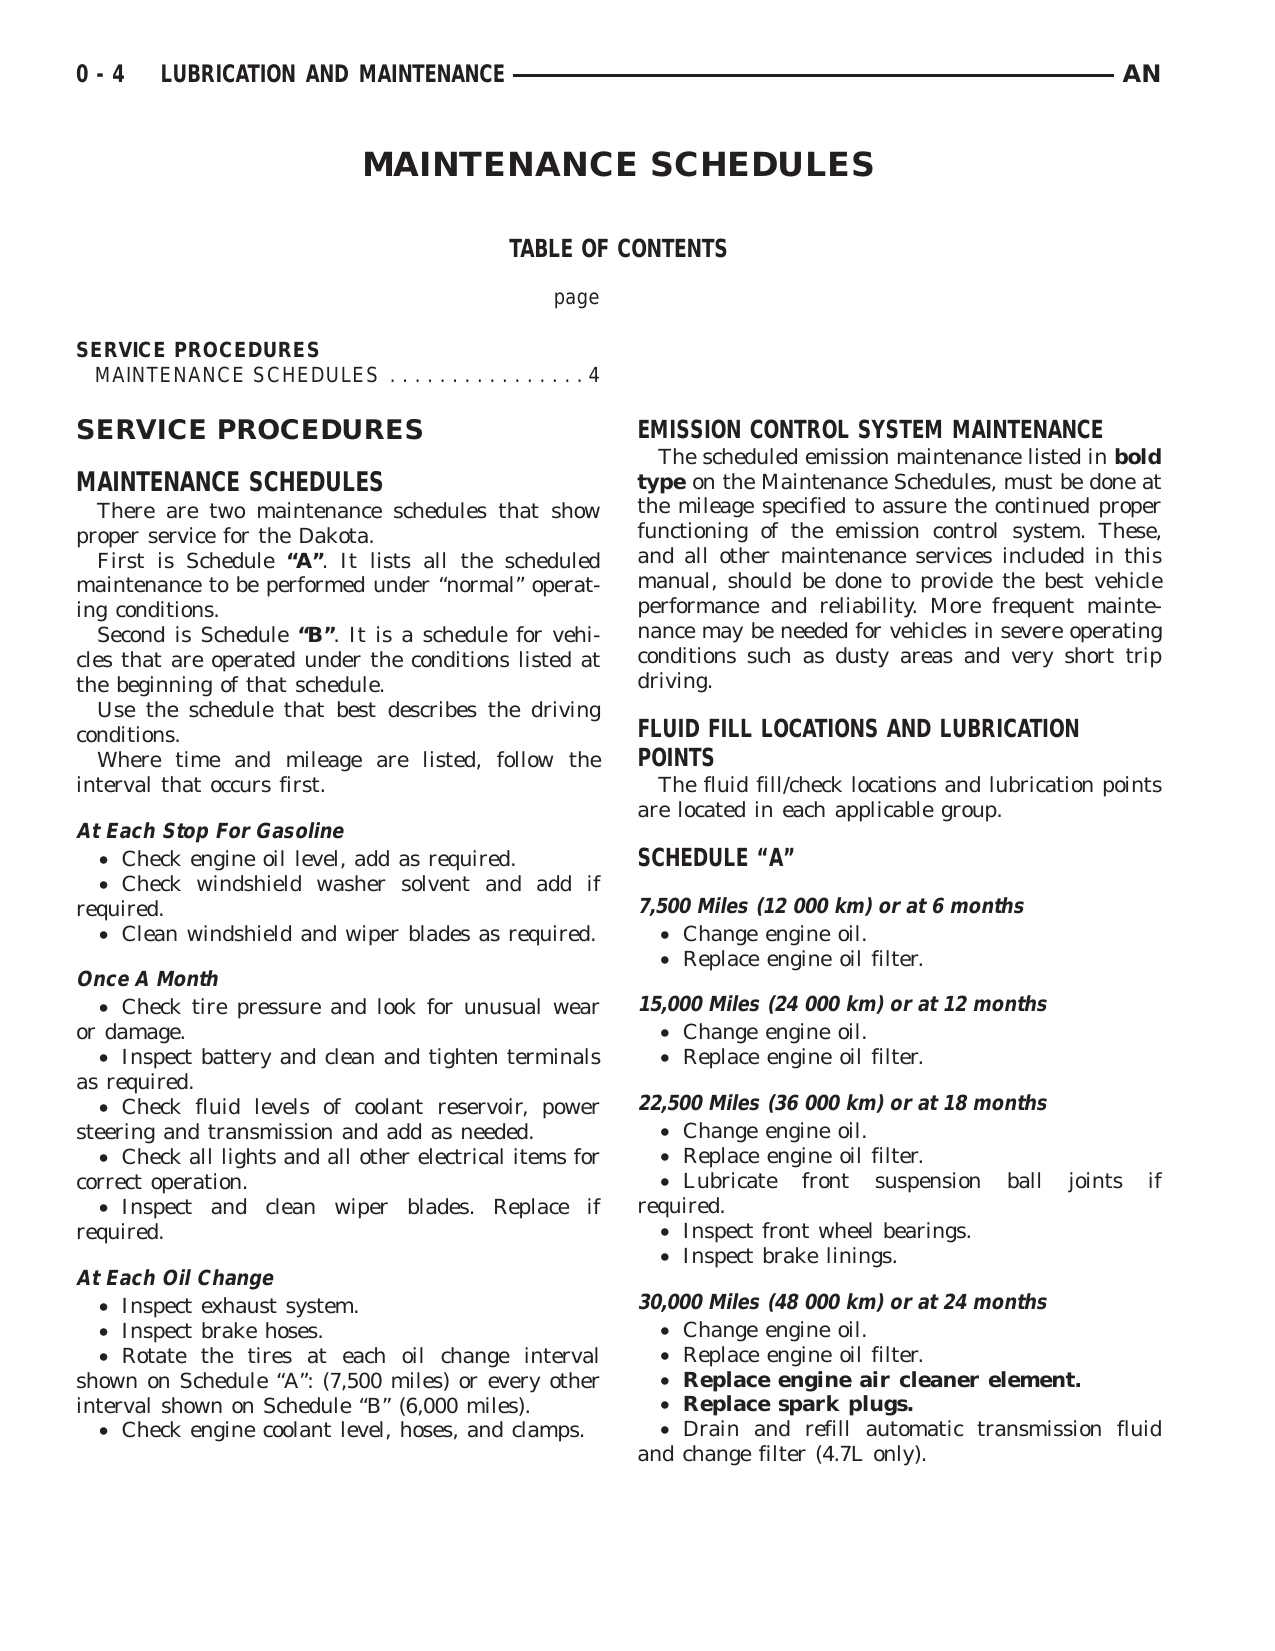 2000-2004 Dodge Dakota repair manual Preview image 4